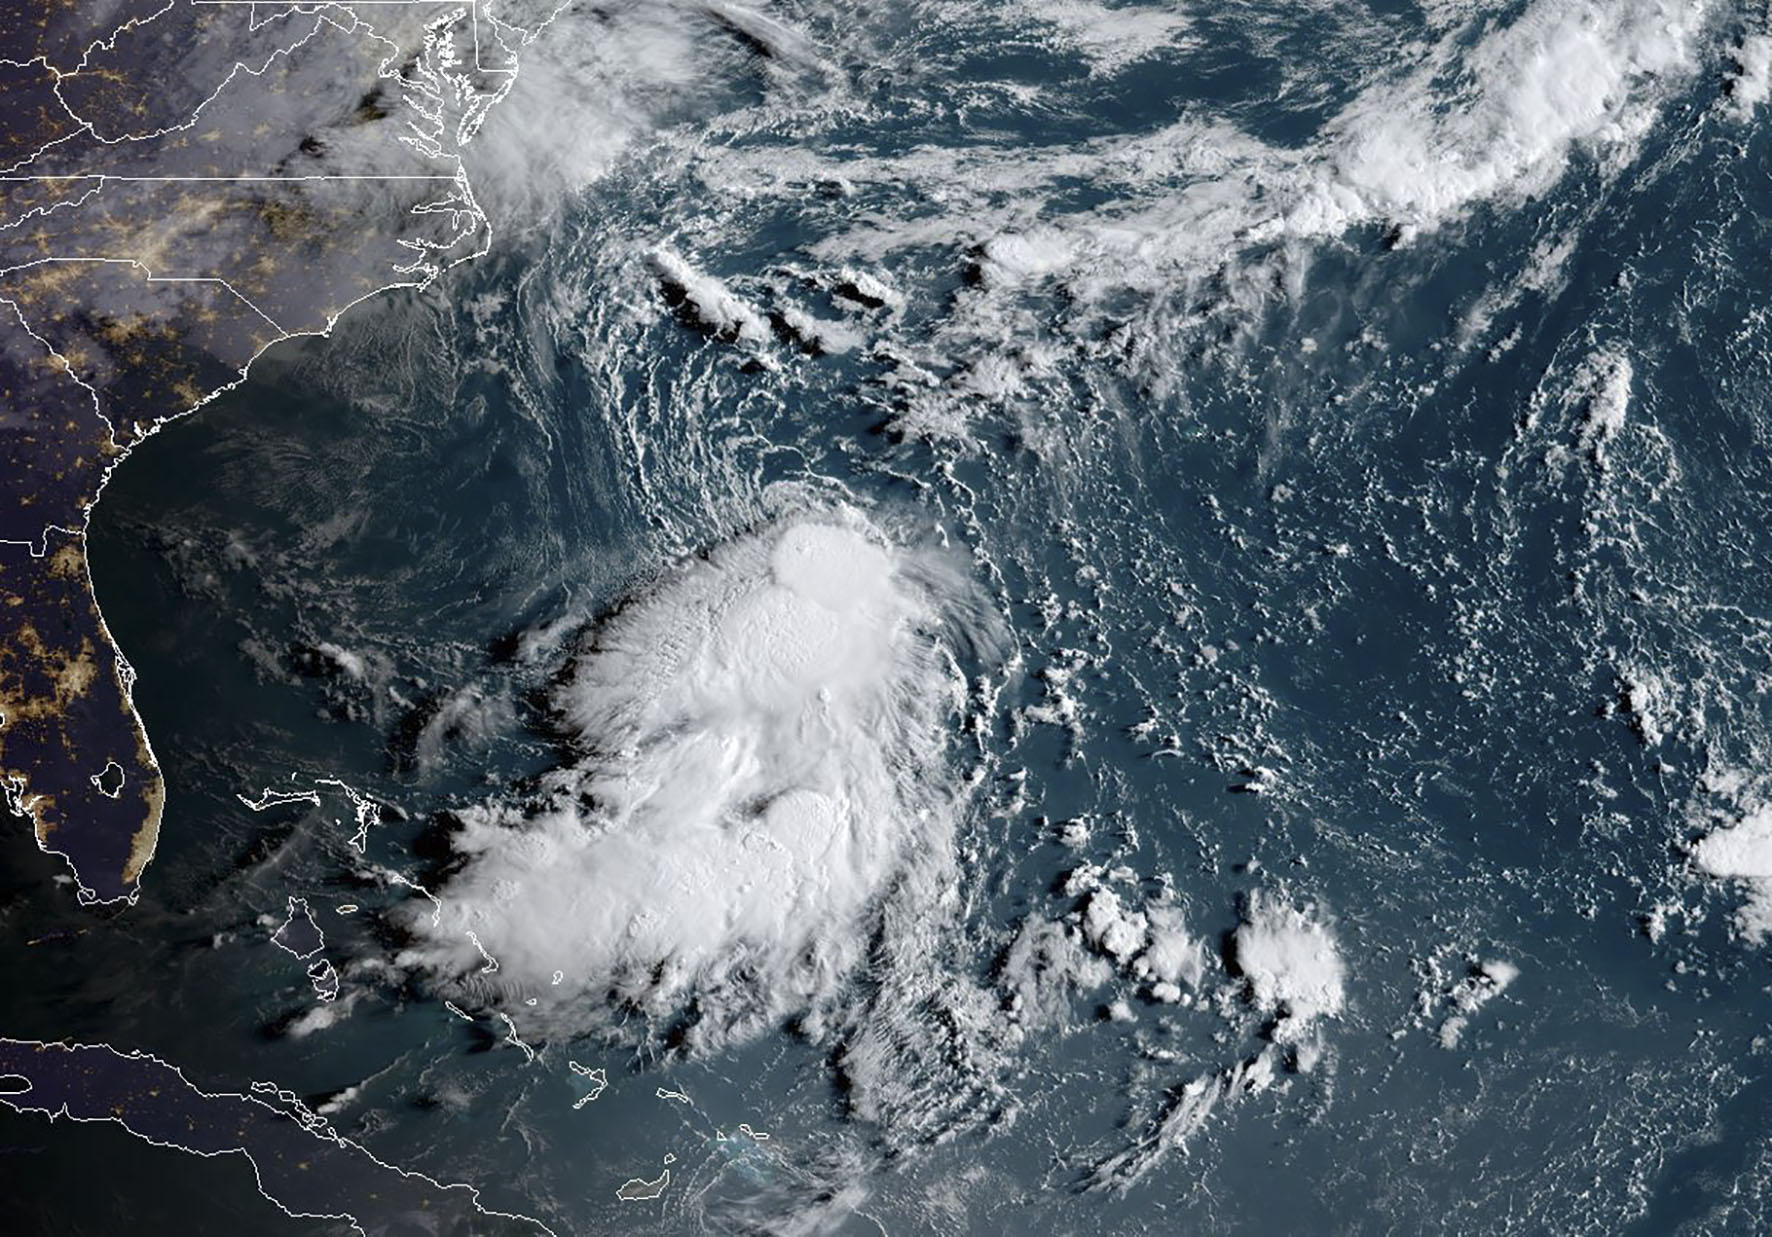 La tempête tropicale Dorian fait des dégâts en Martinique